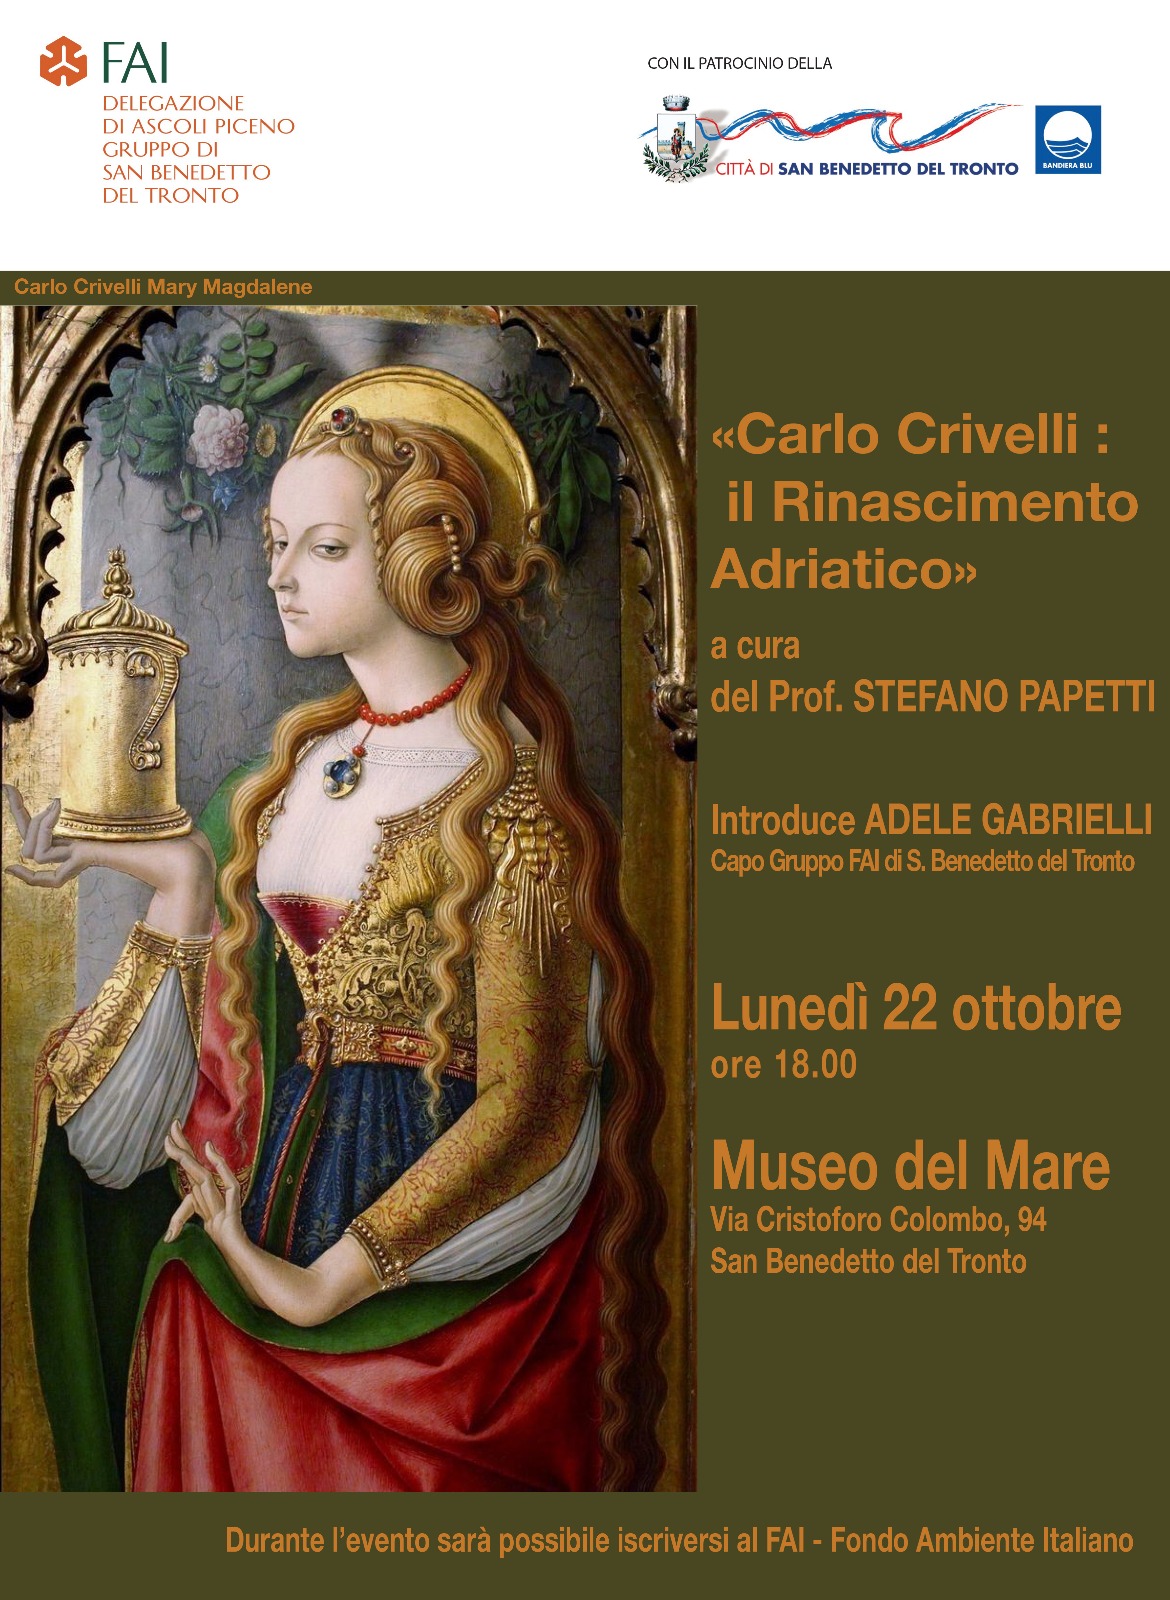 "Carlo Crivelli: il Rinascimento Adriatico"